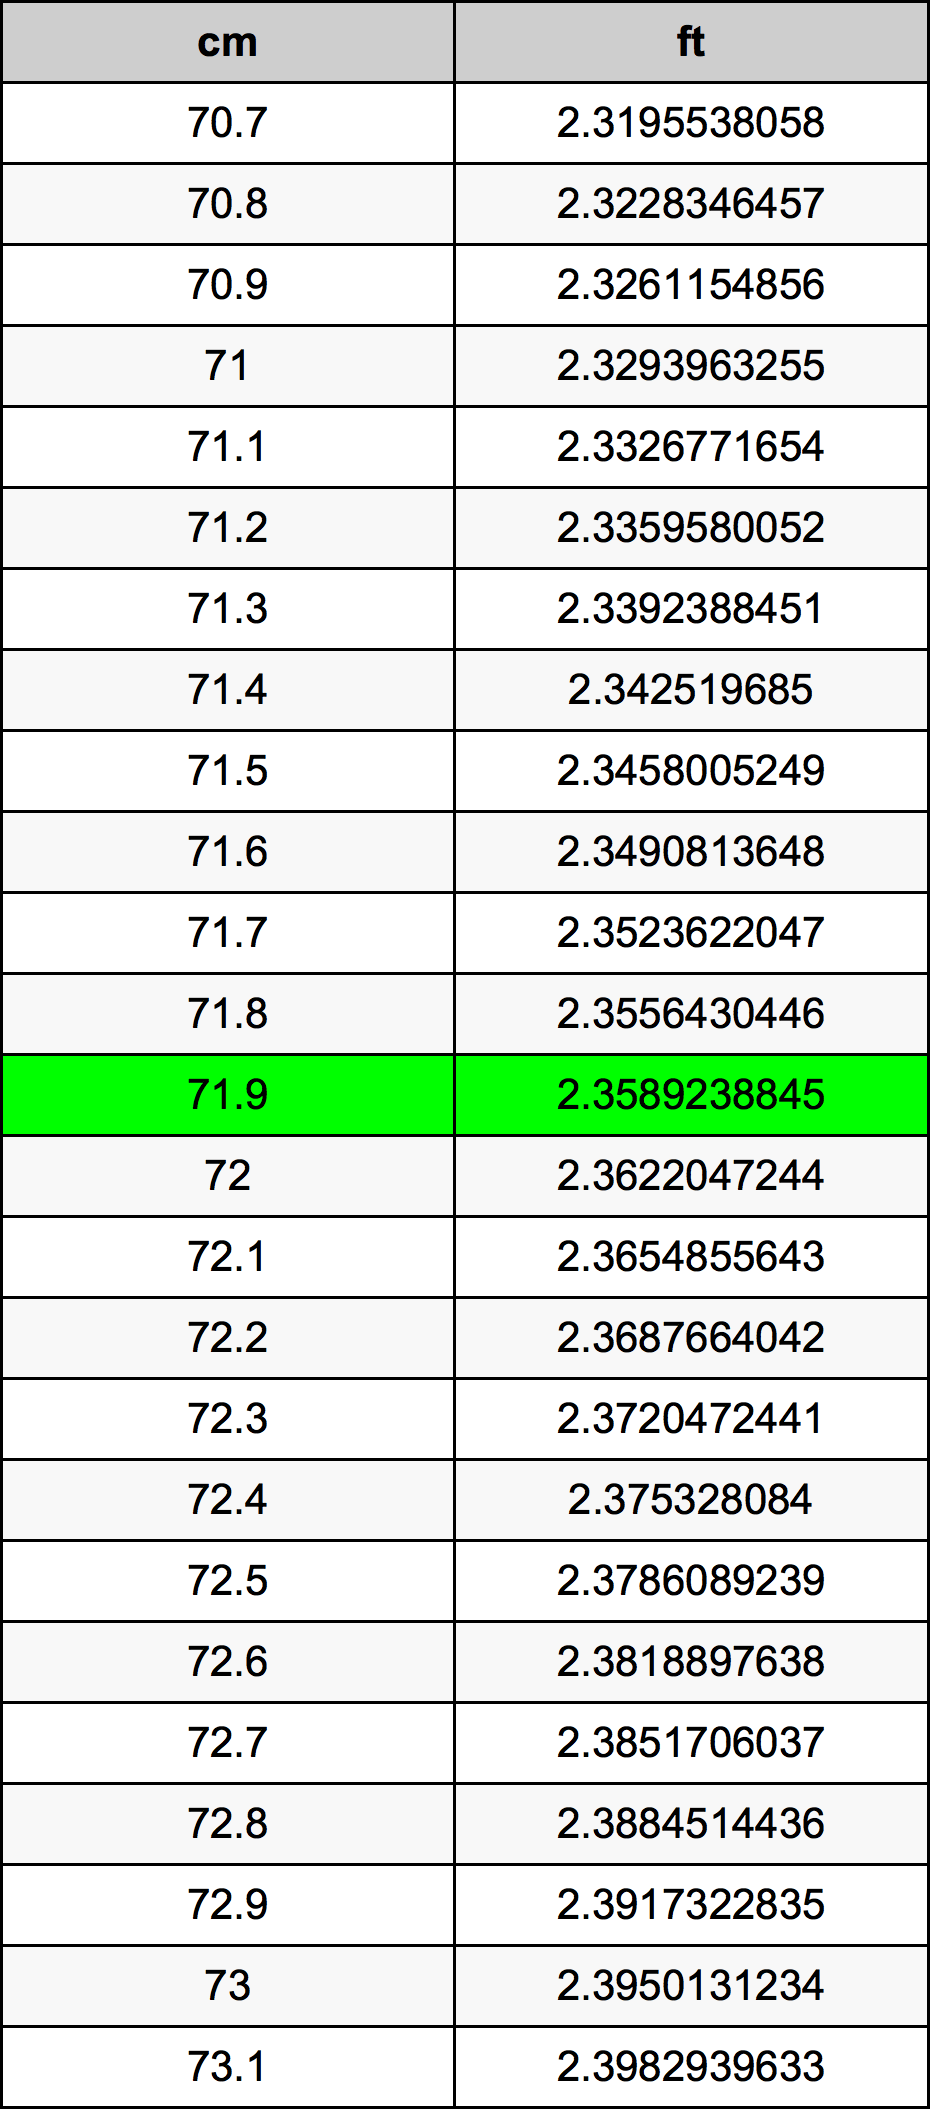 71.9 Centiméter átszámítási táblázat